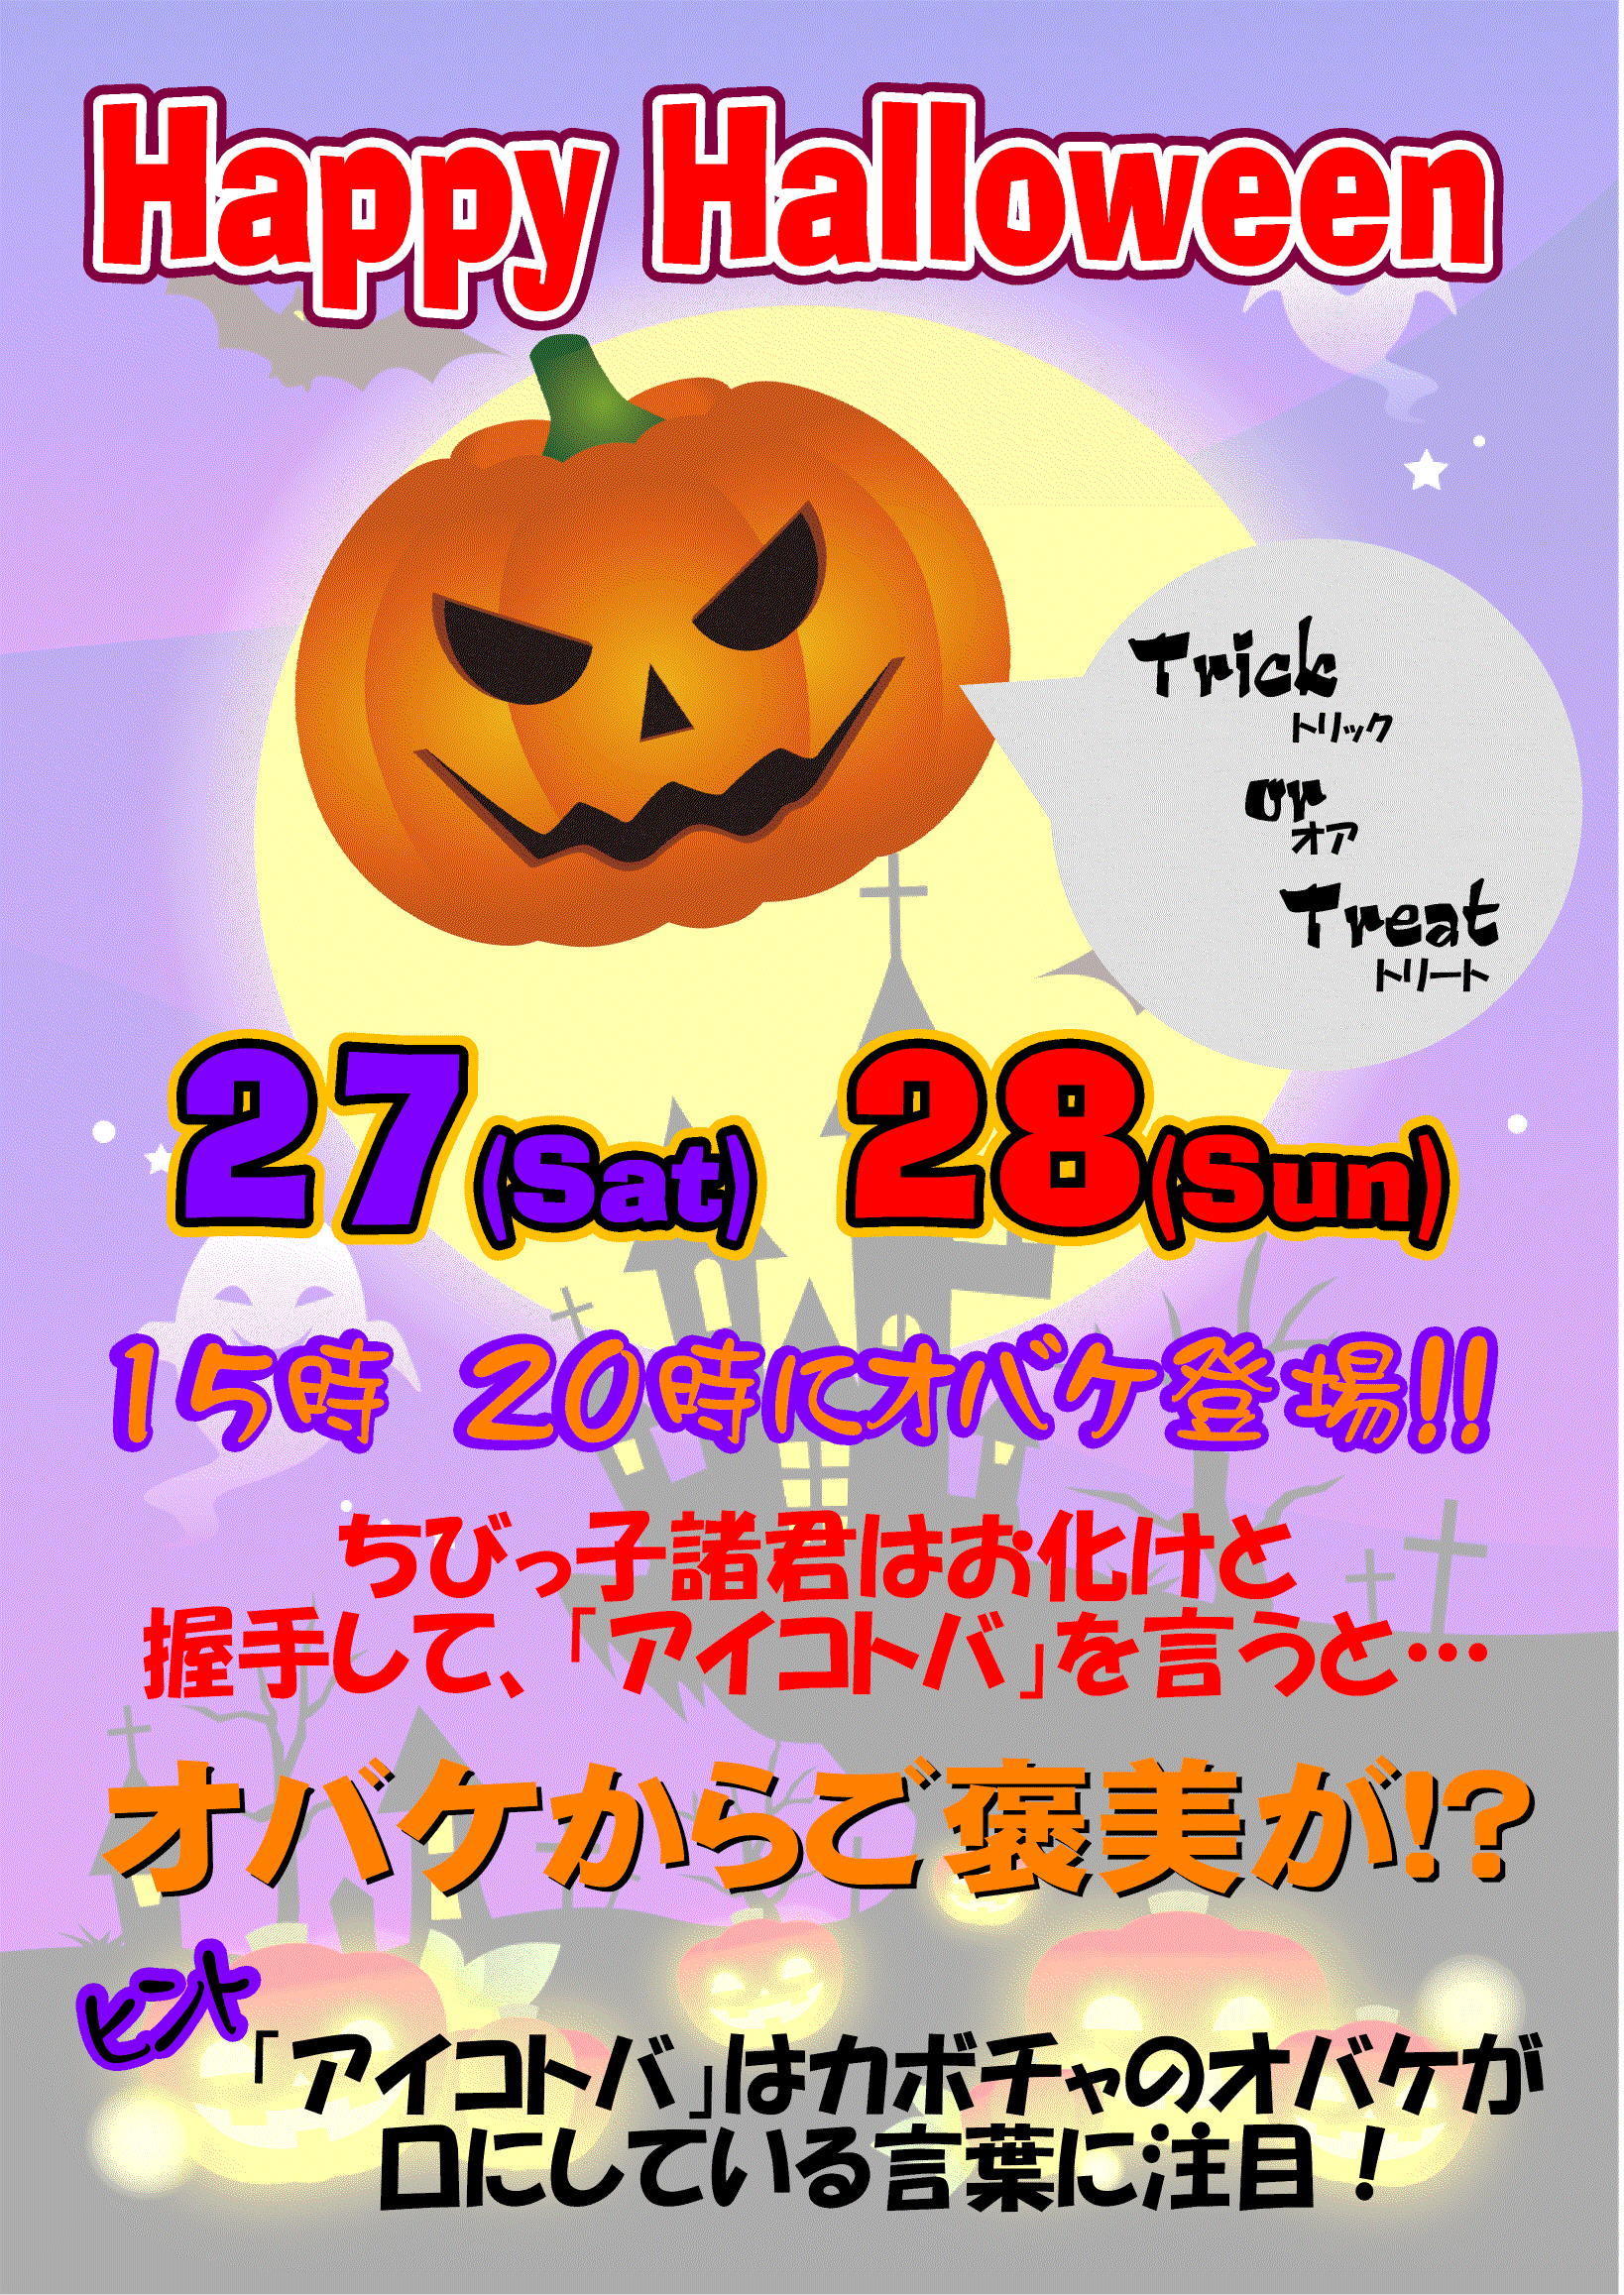 http://www.relafull.co.jp/blog/2012/10/27/1027.jpg